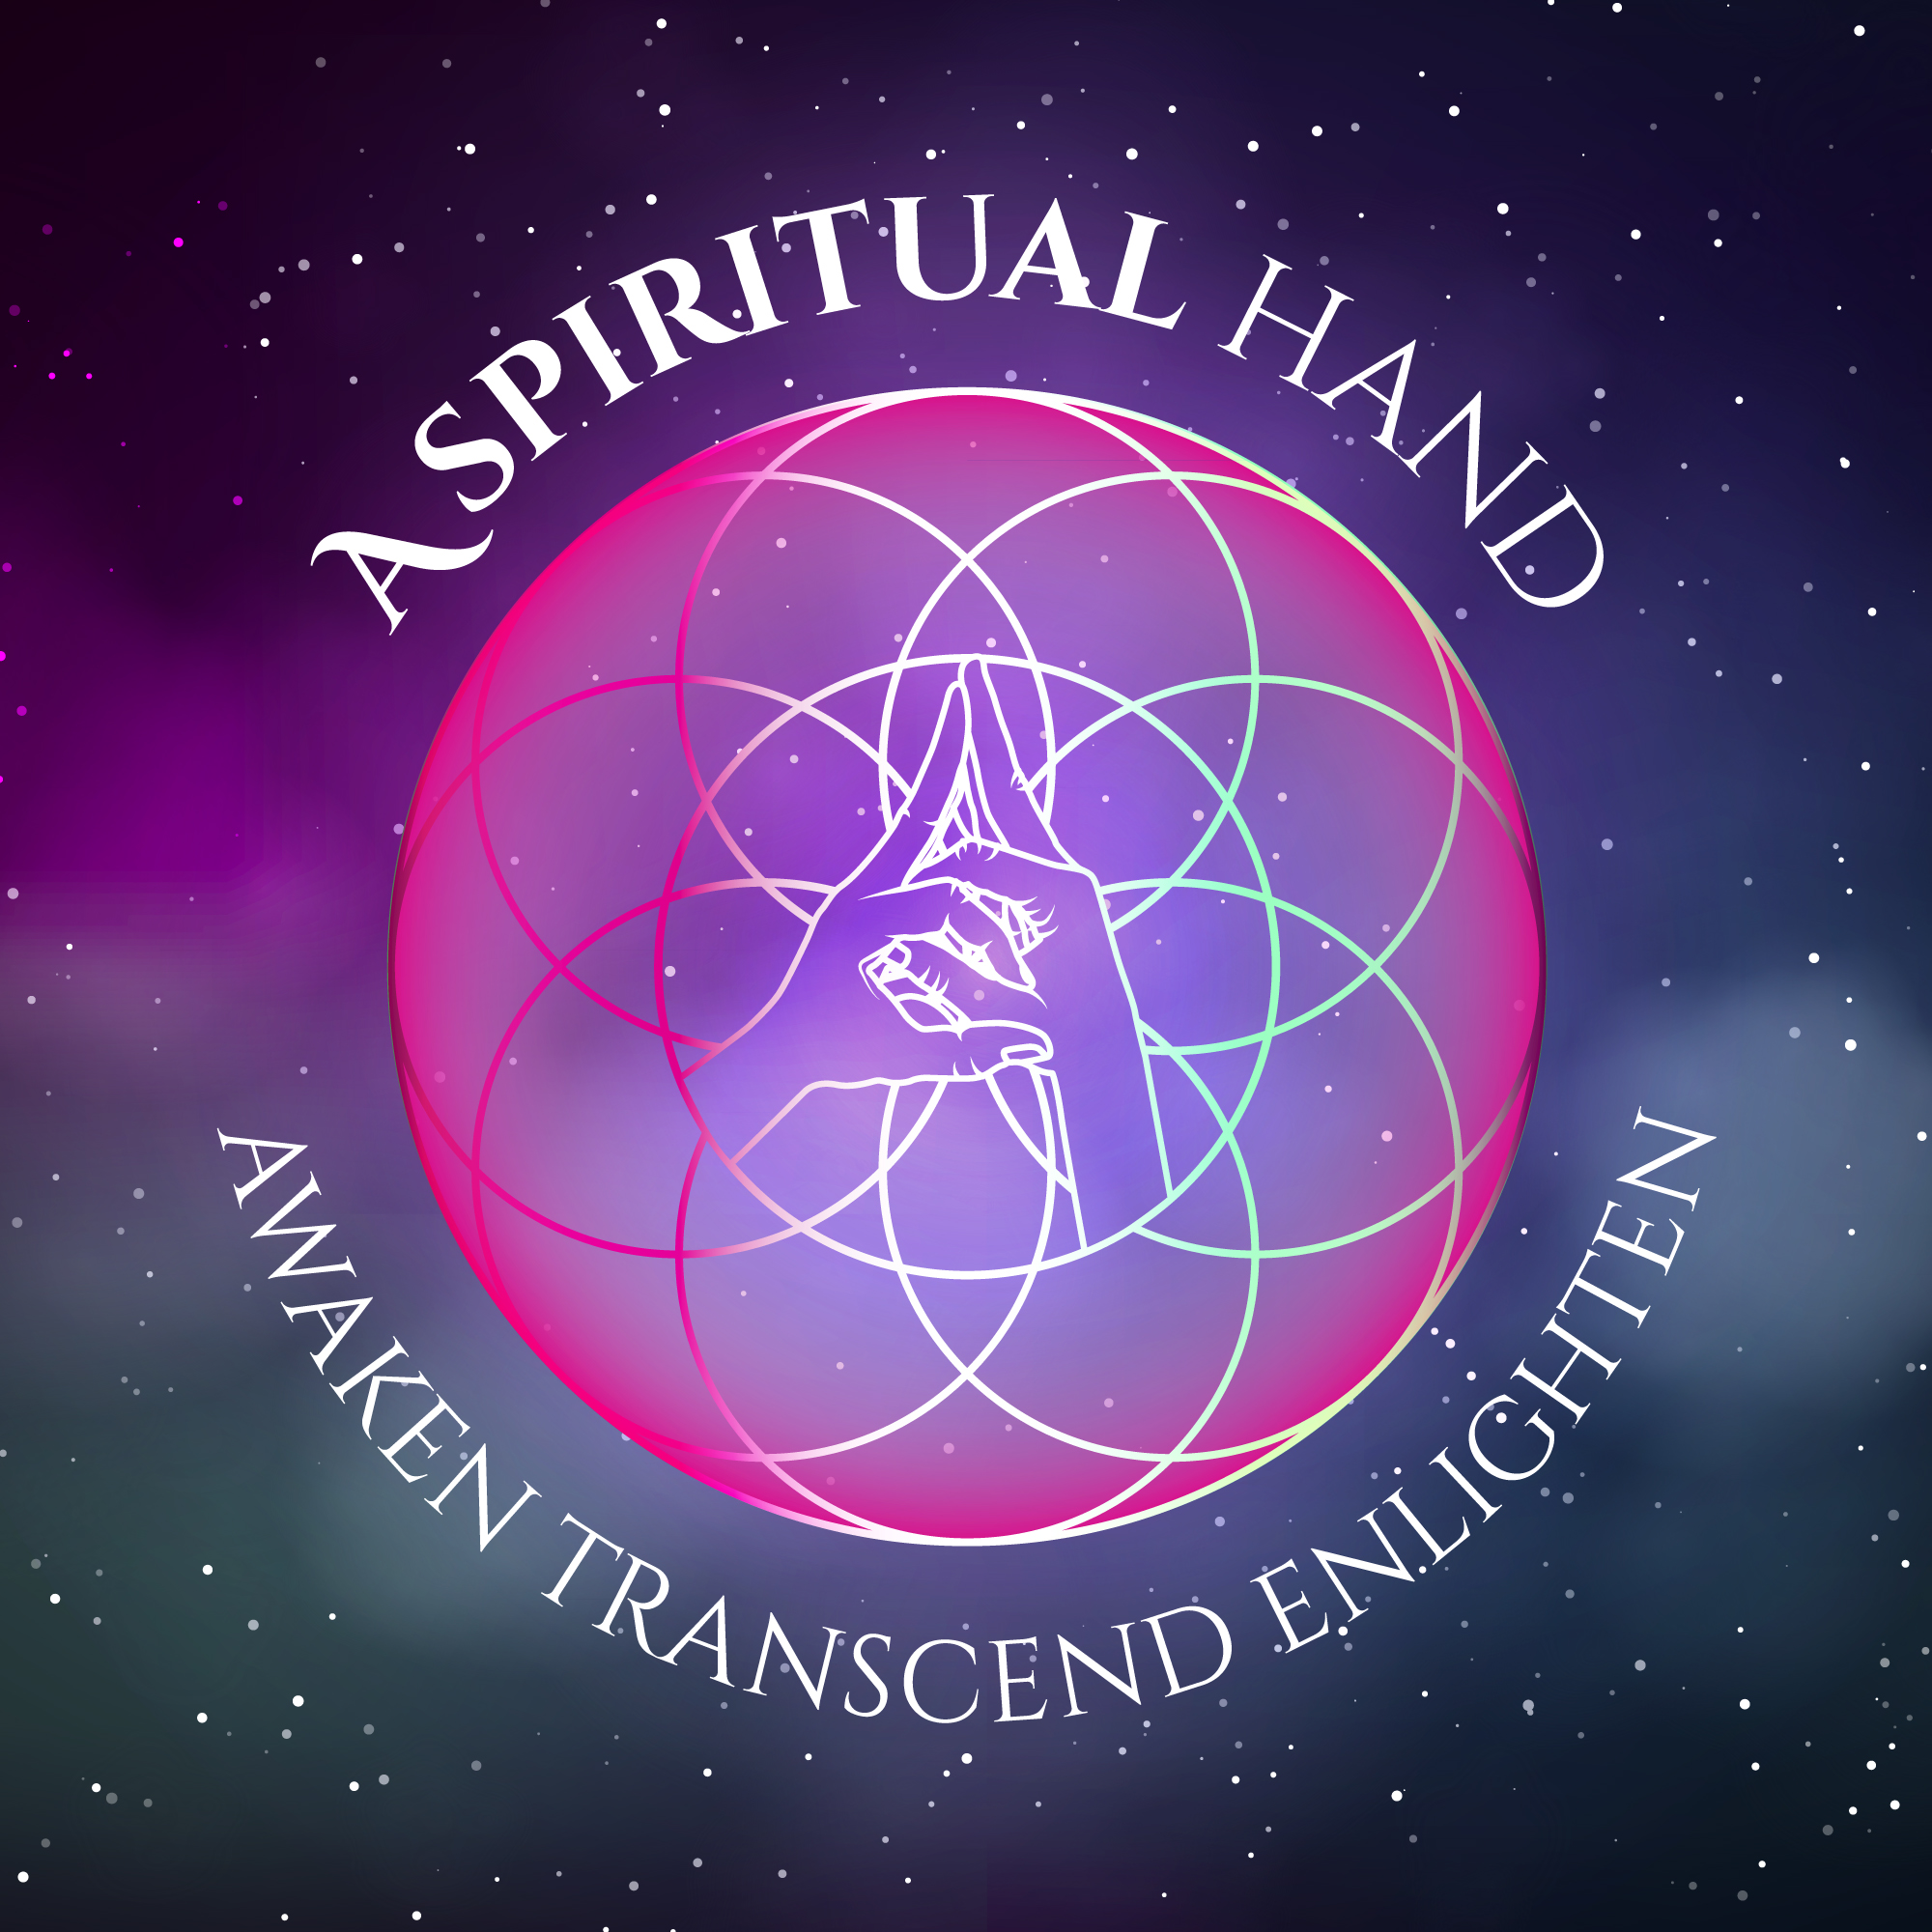 A Spiritual Hand Podcast